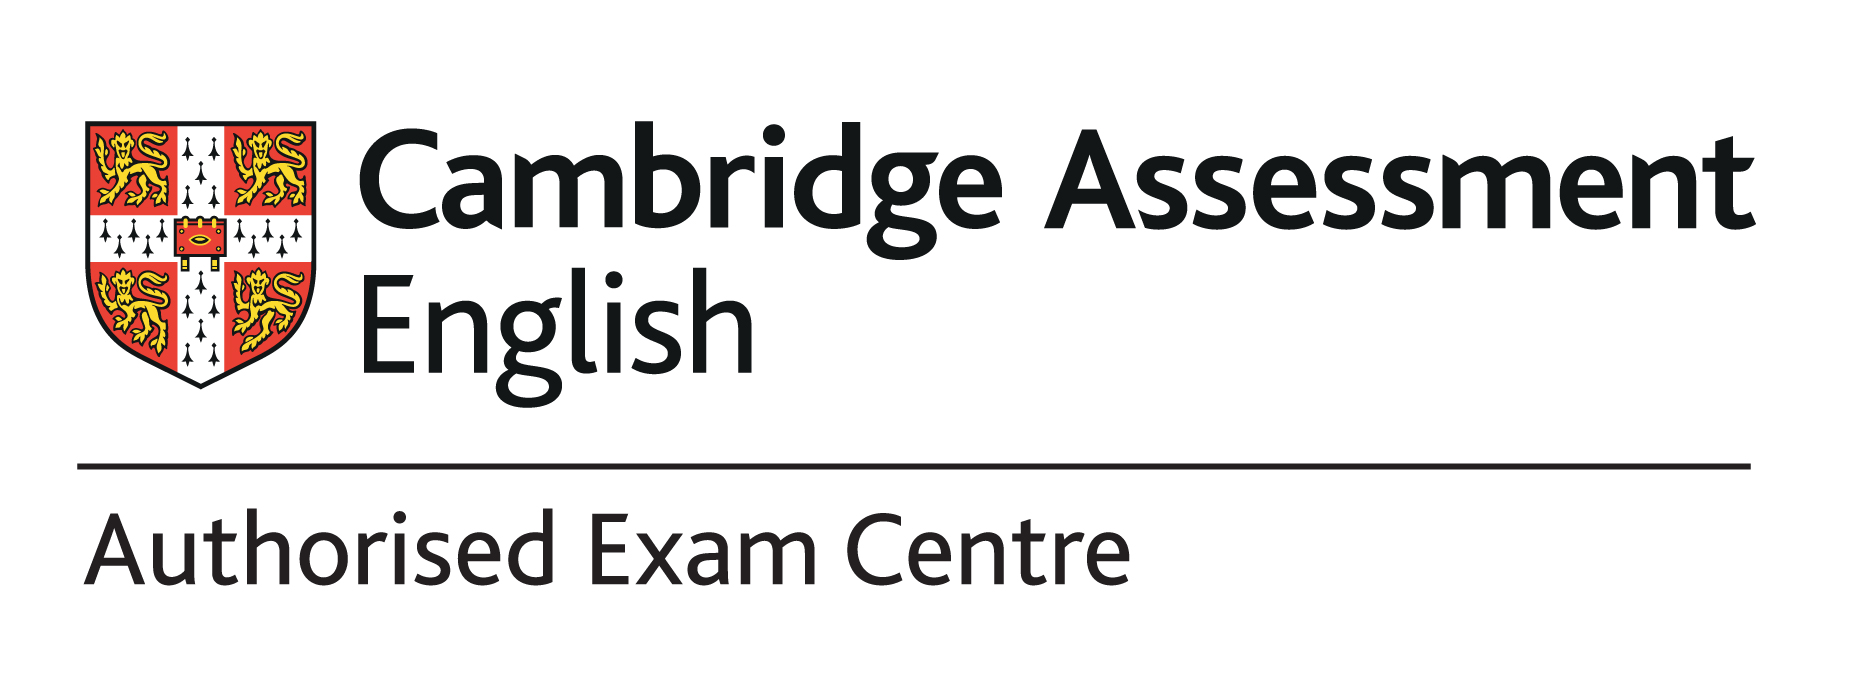 Cambridge Authorized exam center